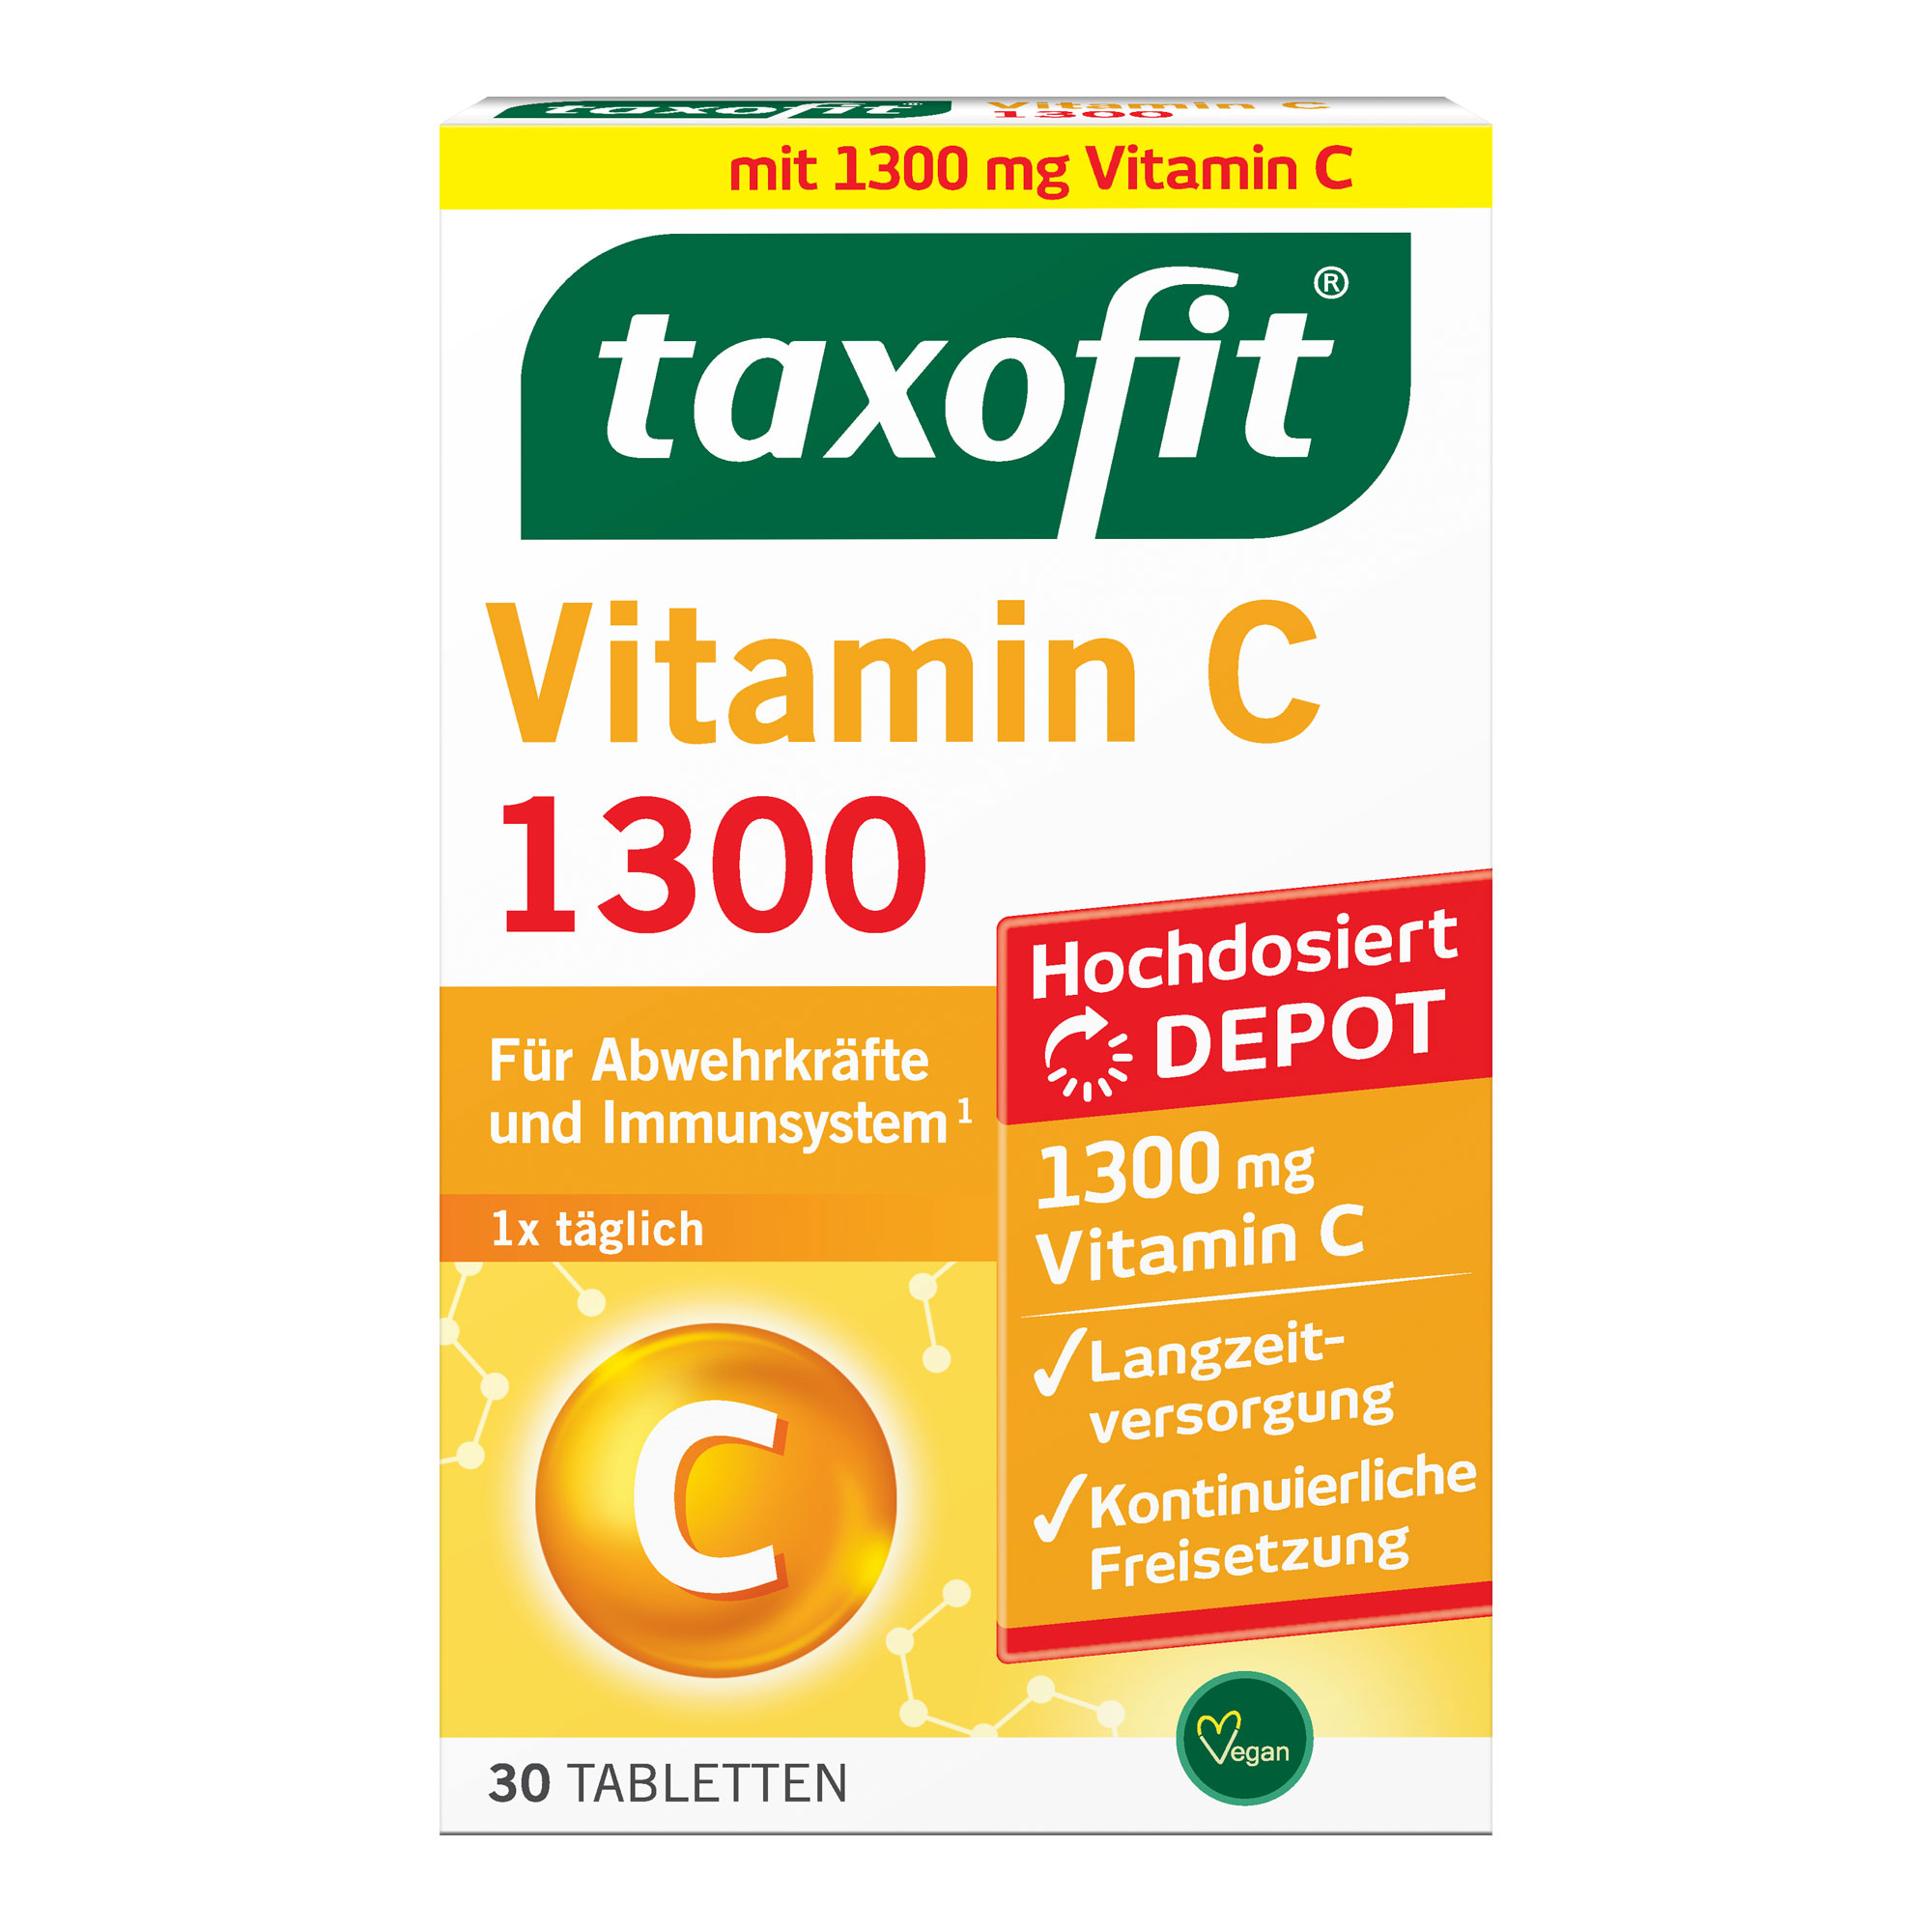 Nahrungsergänzungsmittel mit hochdosiertem Vitamin C.